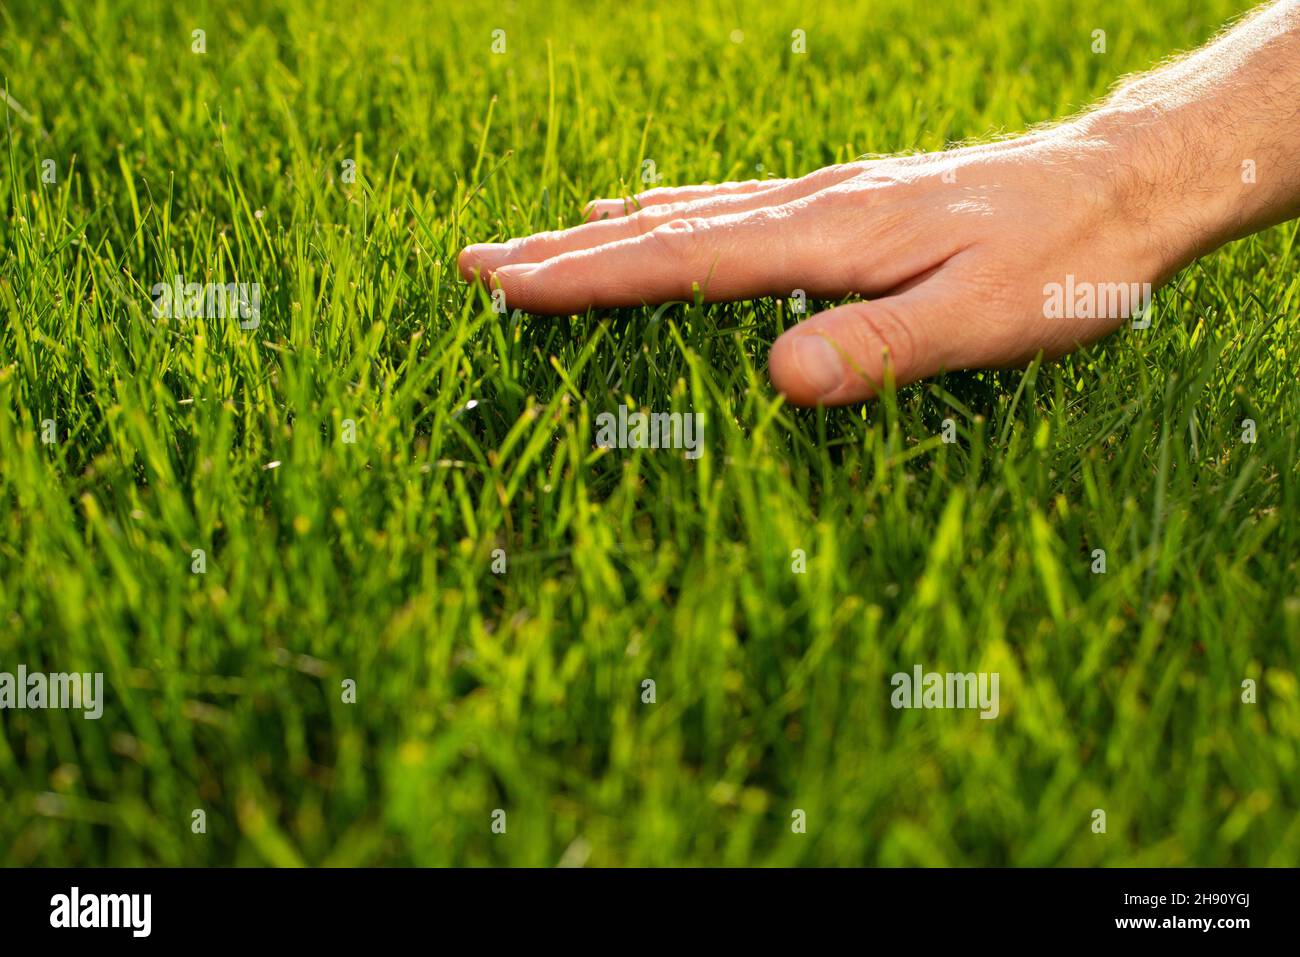 touch grass 